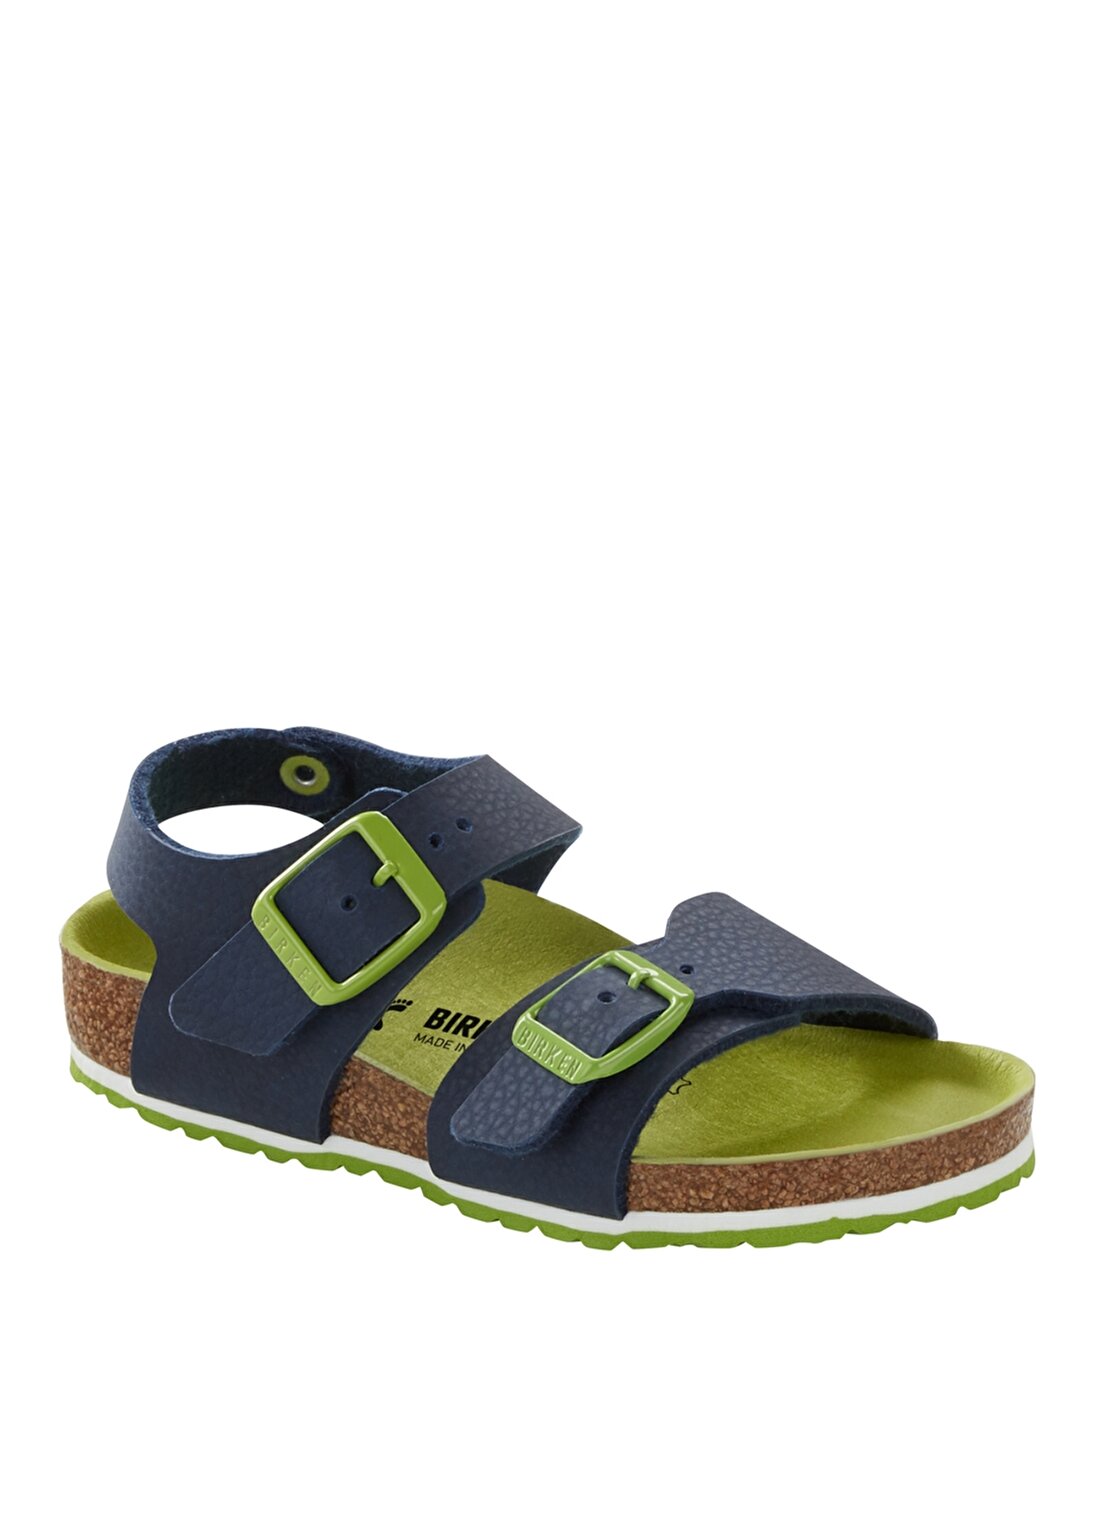 Birkenstock Lacivert - Yeşil Erkek Çocuk Sandalet 1015756 NEW YORK KIDS BF